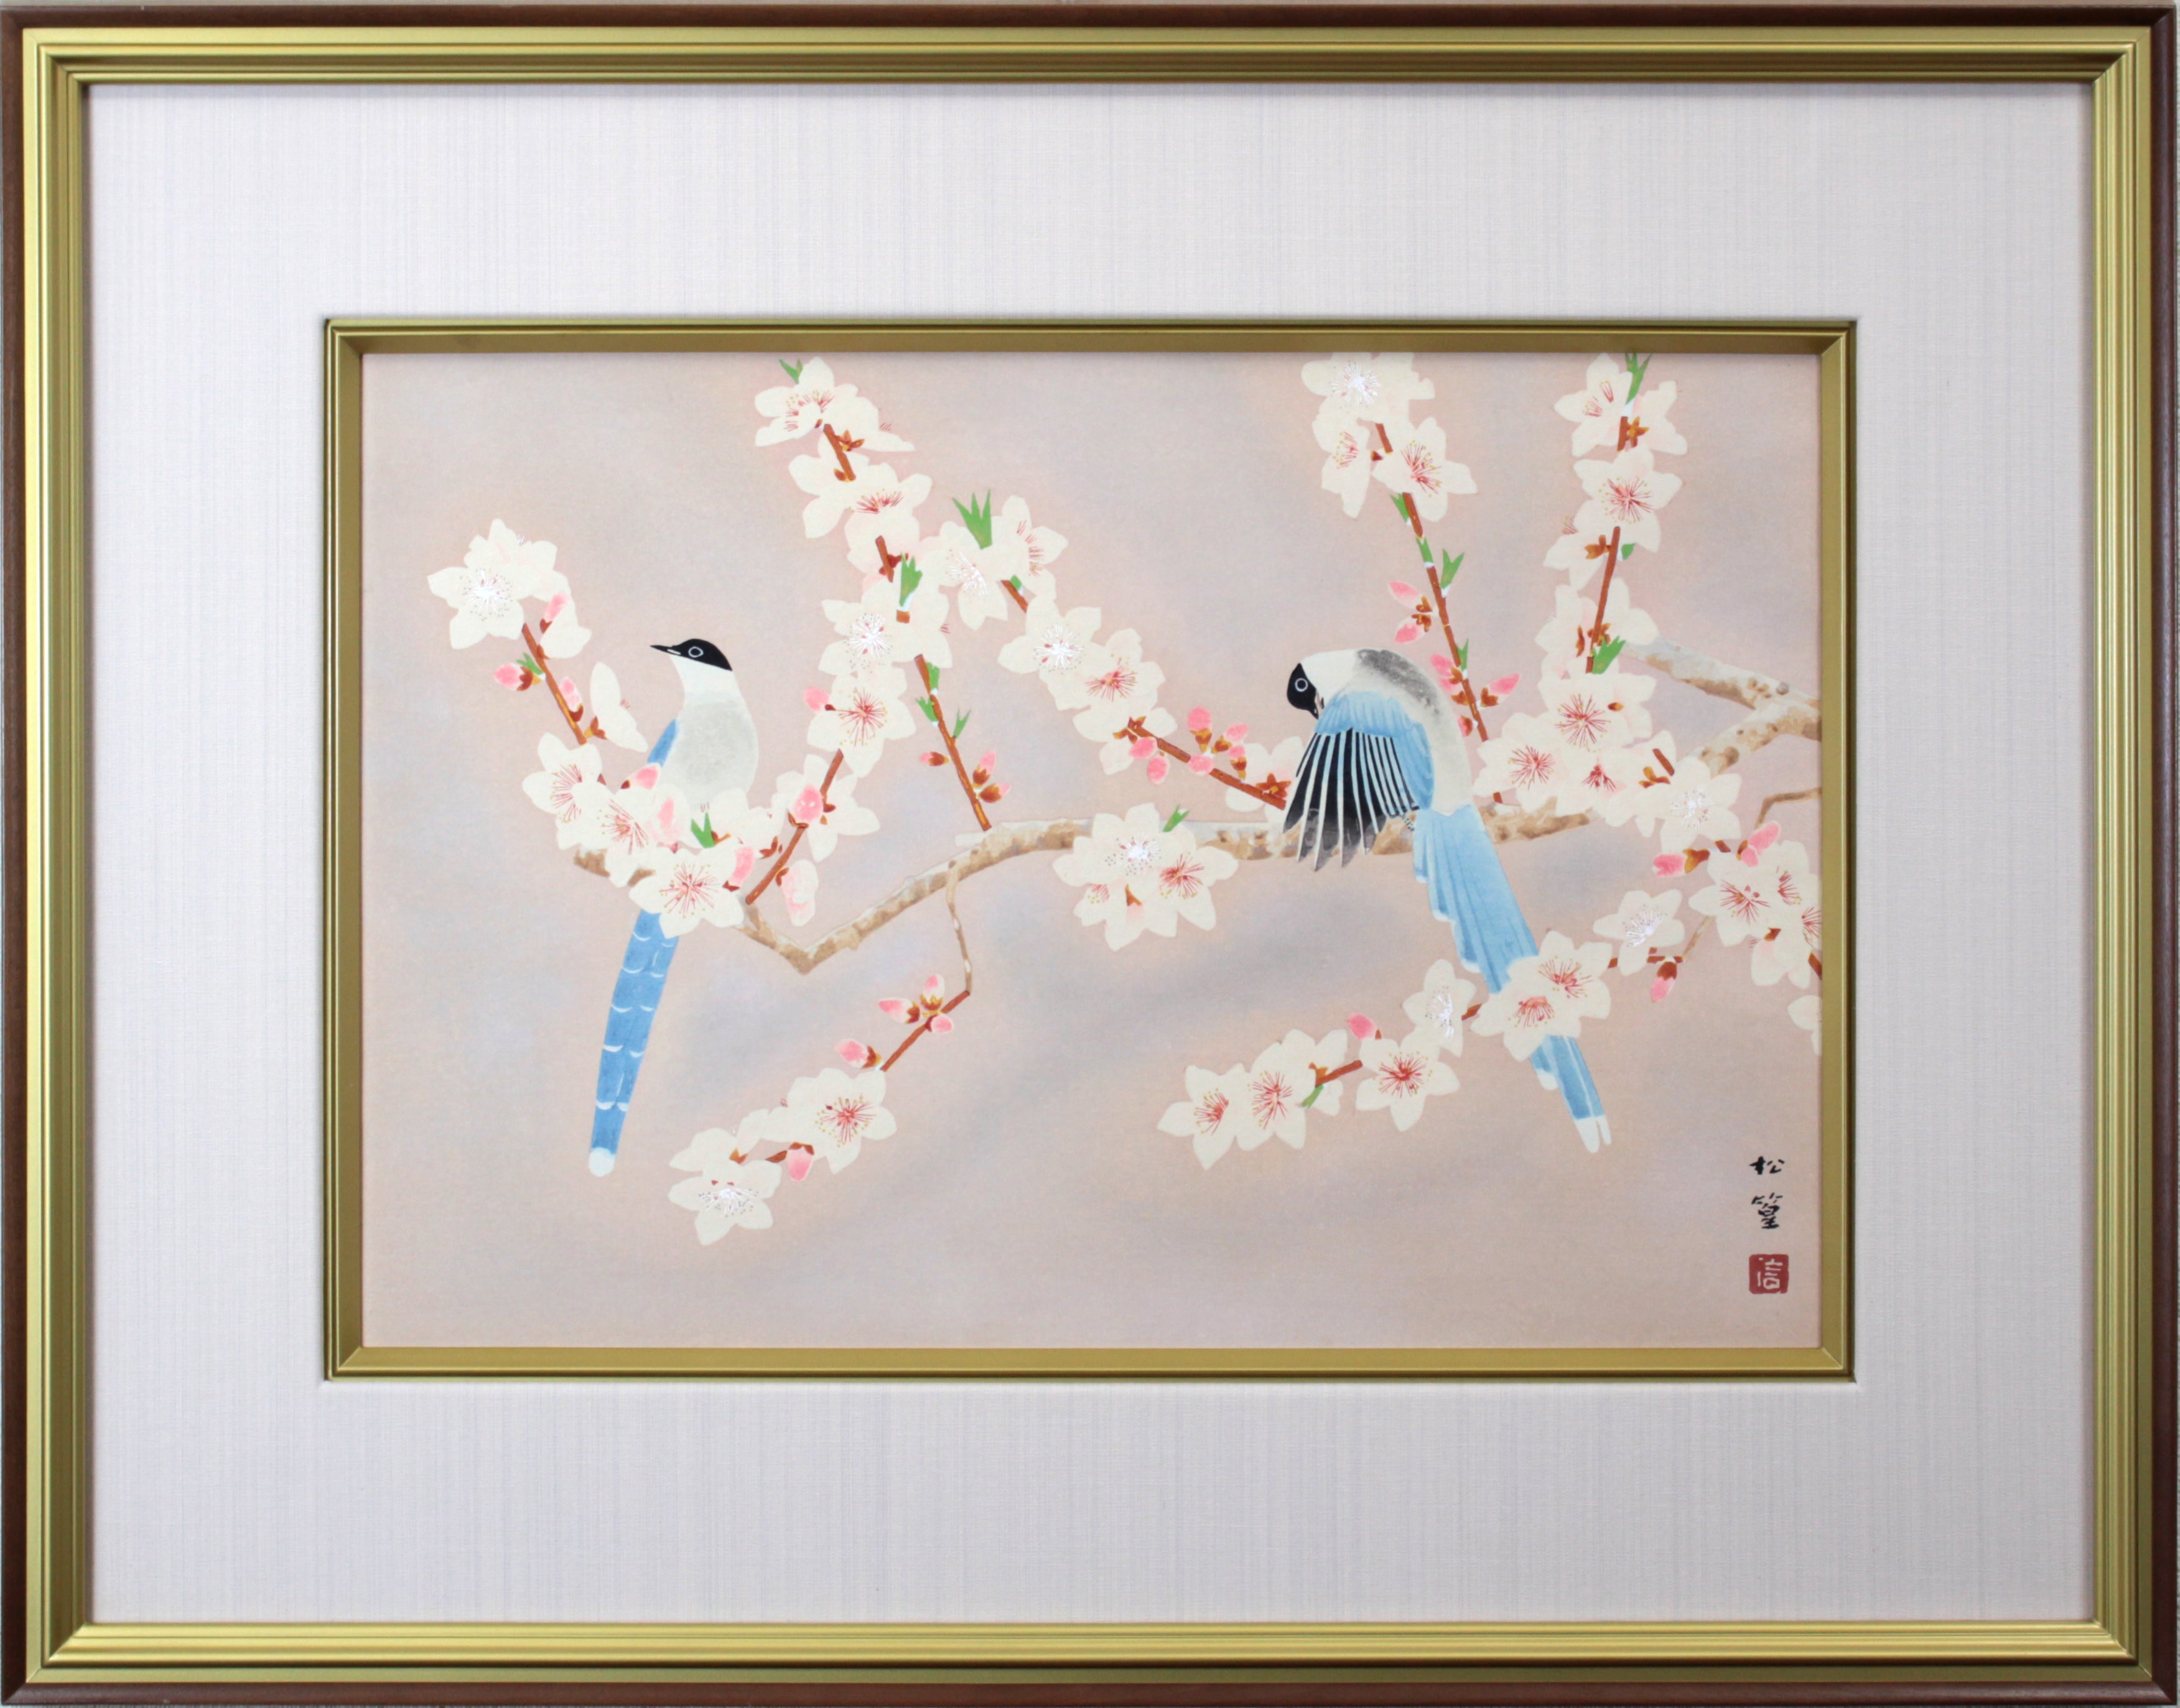 【限定価格】。◆楾◆ 上村松篁 「桔梗」 肉筆日本画 色紙 [B180]OO/22.3廻/OD/(120) 花鳥、鳥獣